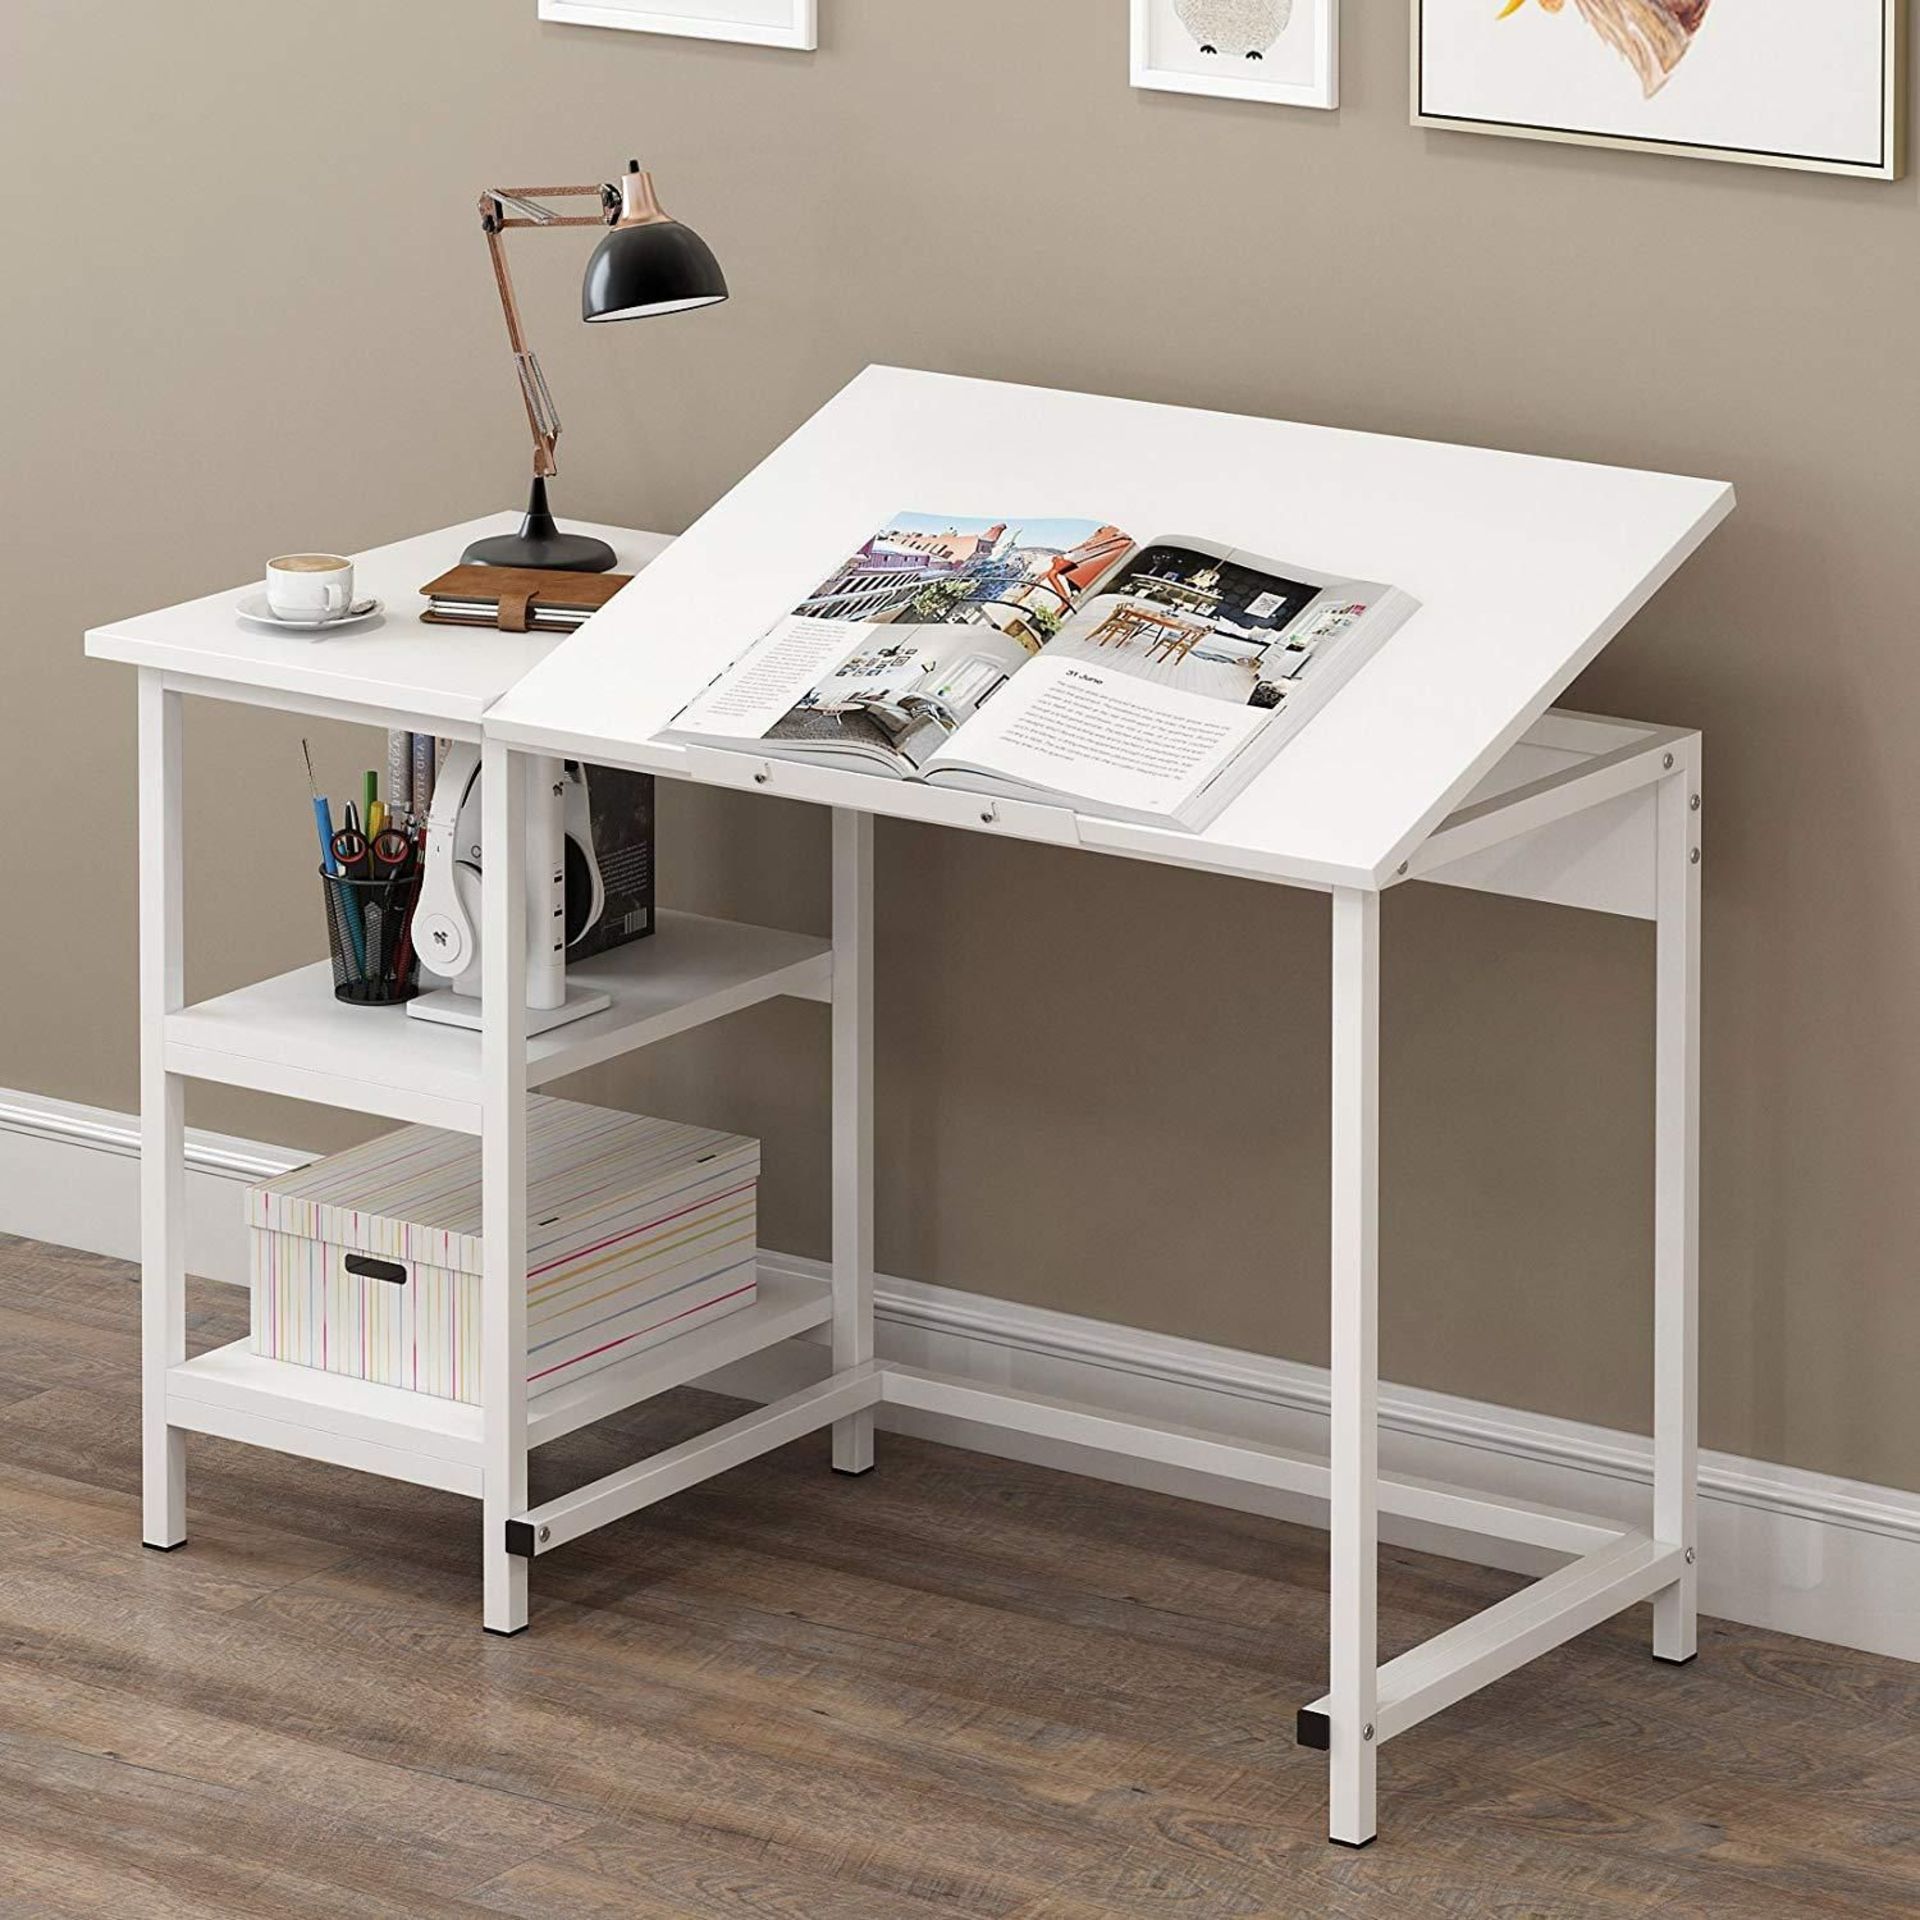 Atelier Adjustable Desk with Shelves in White. -ER30